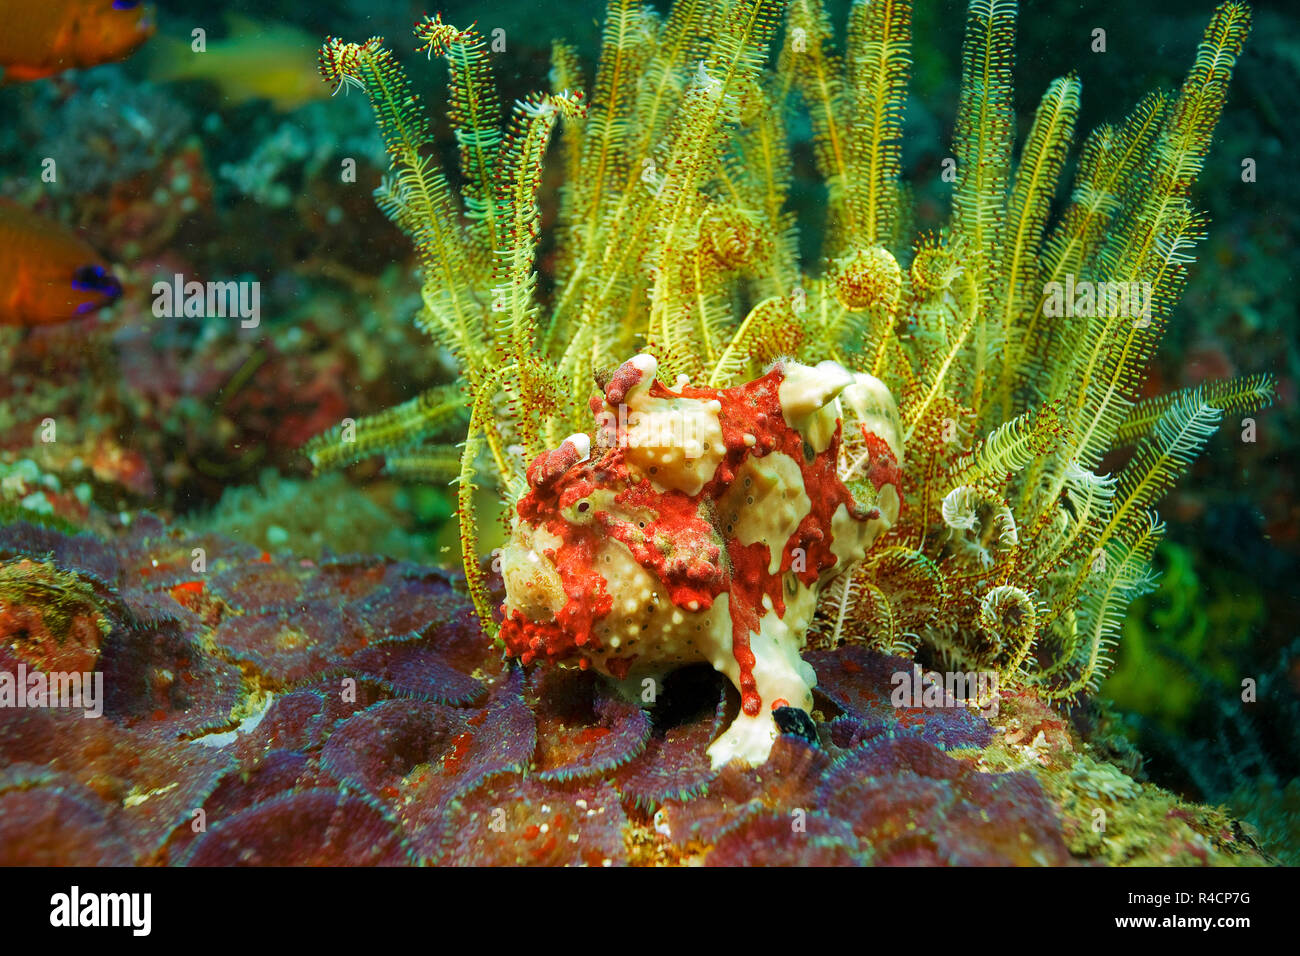 Rana pescatrice presenta verrucosa o Clown amglerfish (Antennarius maculatus) a un crinoide giallo (Crinoidea), Sabang Bach, Mindoro, Filippine Foto Stock